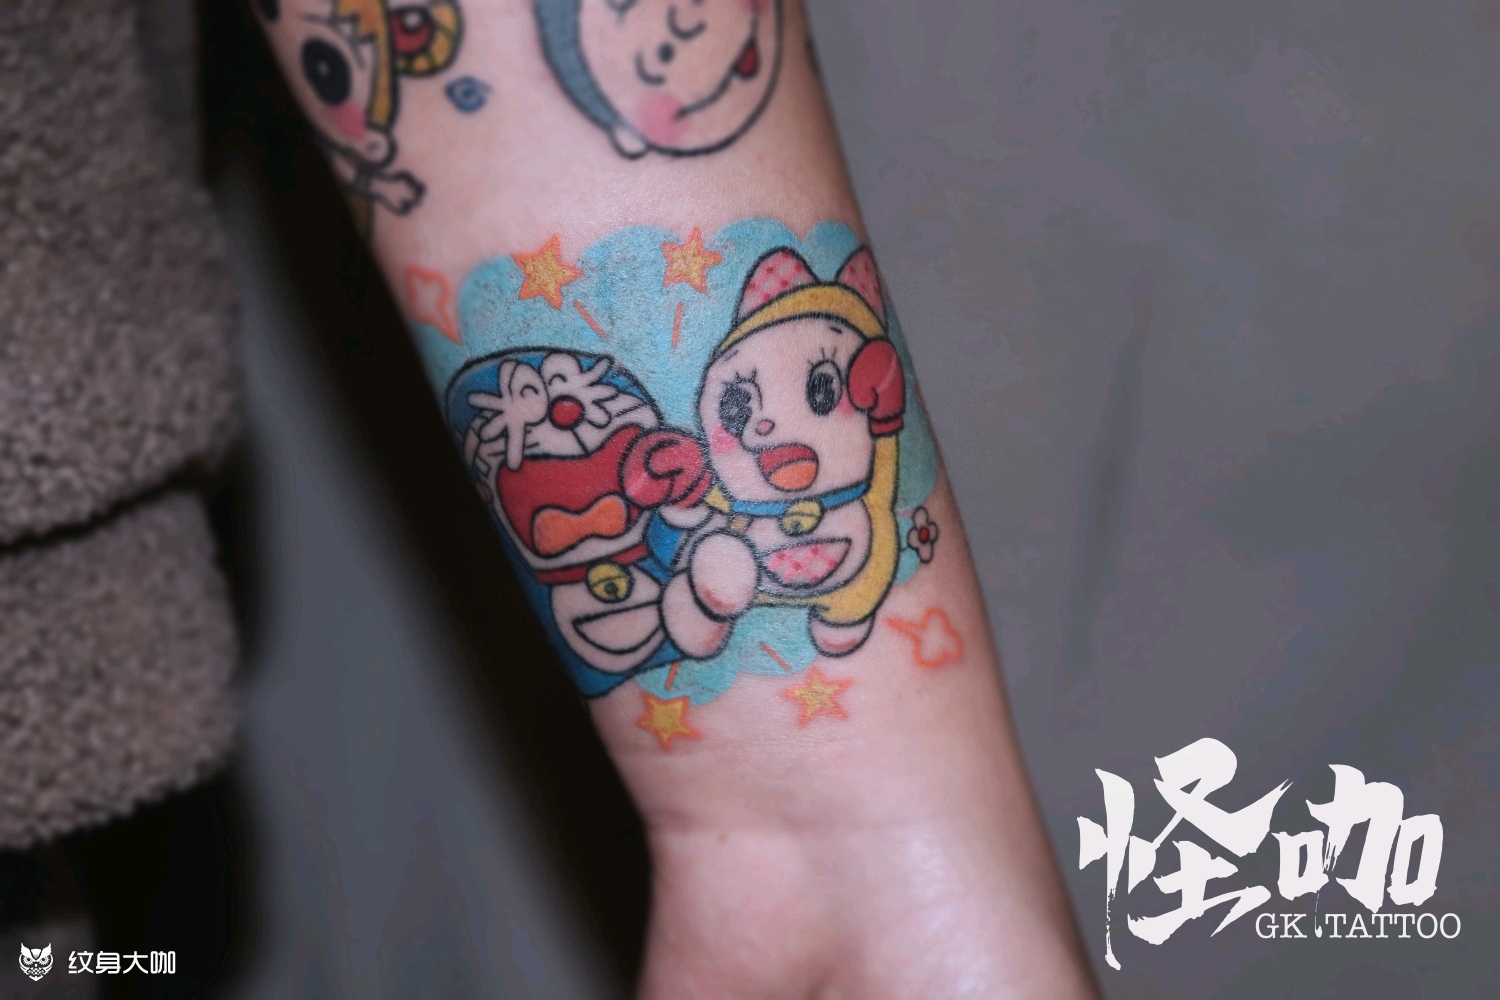 多啦a梦 卡通_纹身图案手稿图片_武汉怪咖的纹身作品集